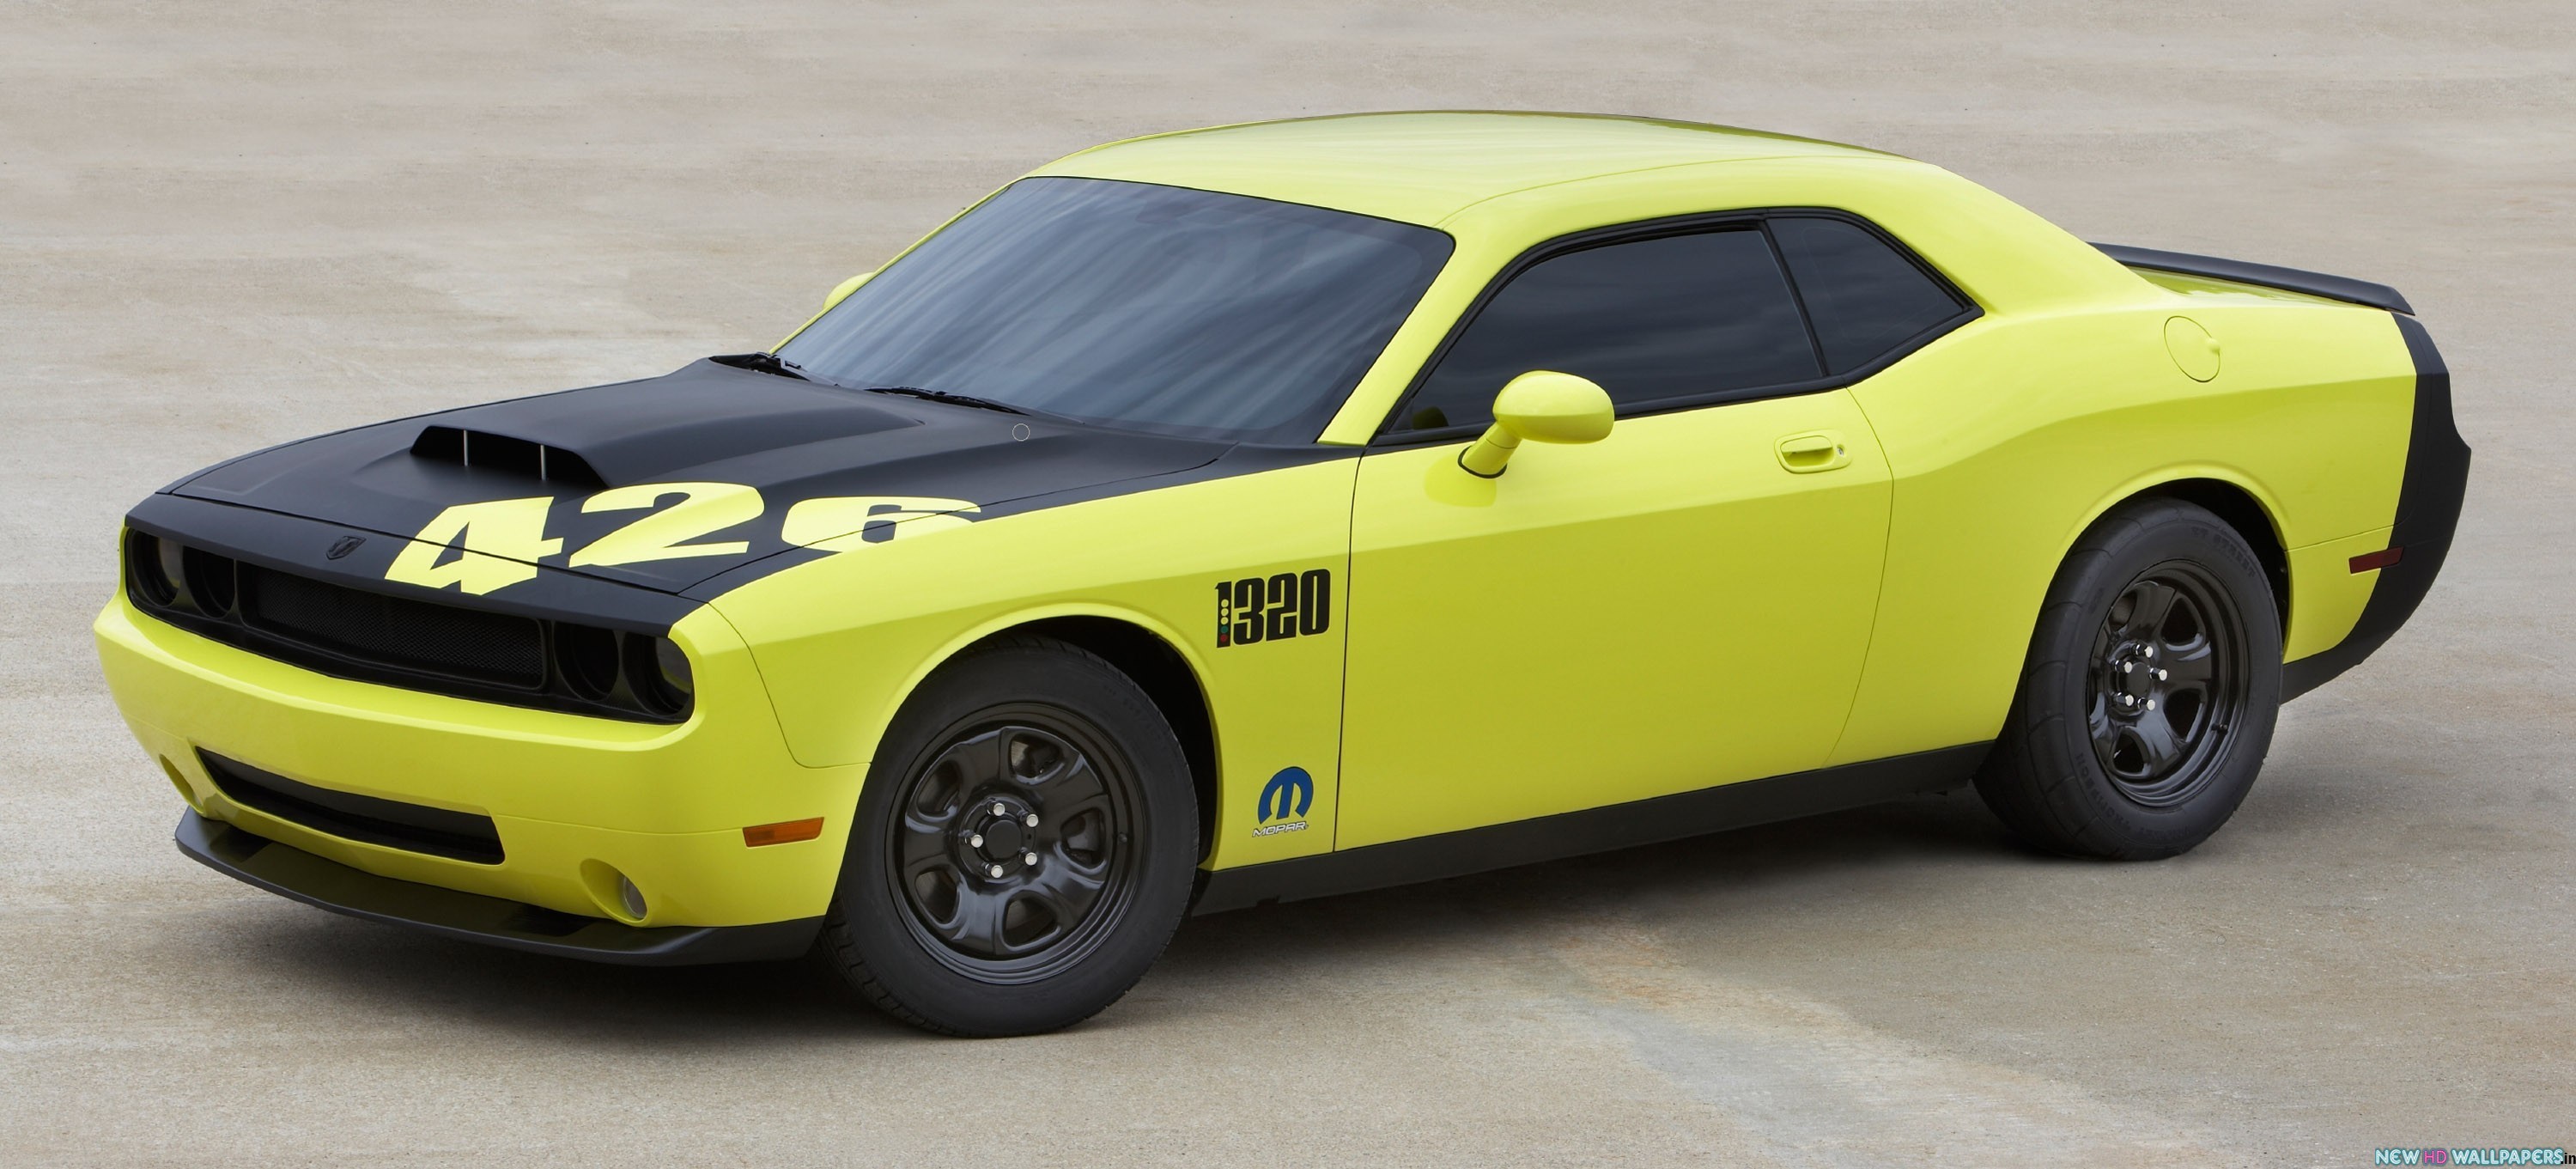 3000x1361 Mopar Dodge Challenger Yellow Cars HD Wallpaper